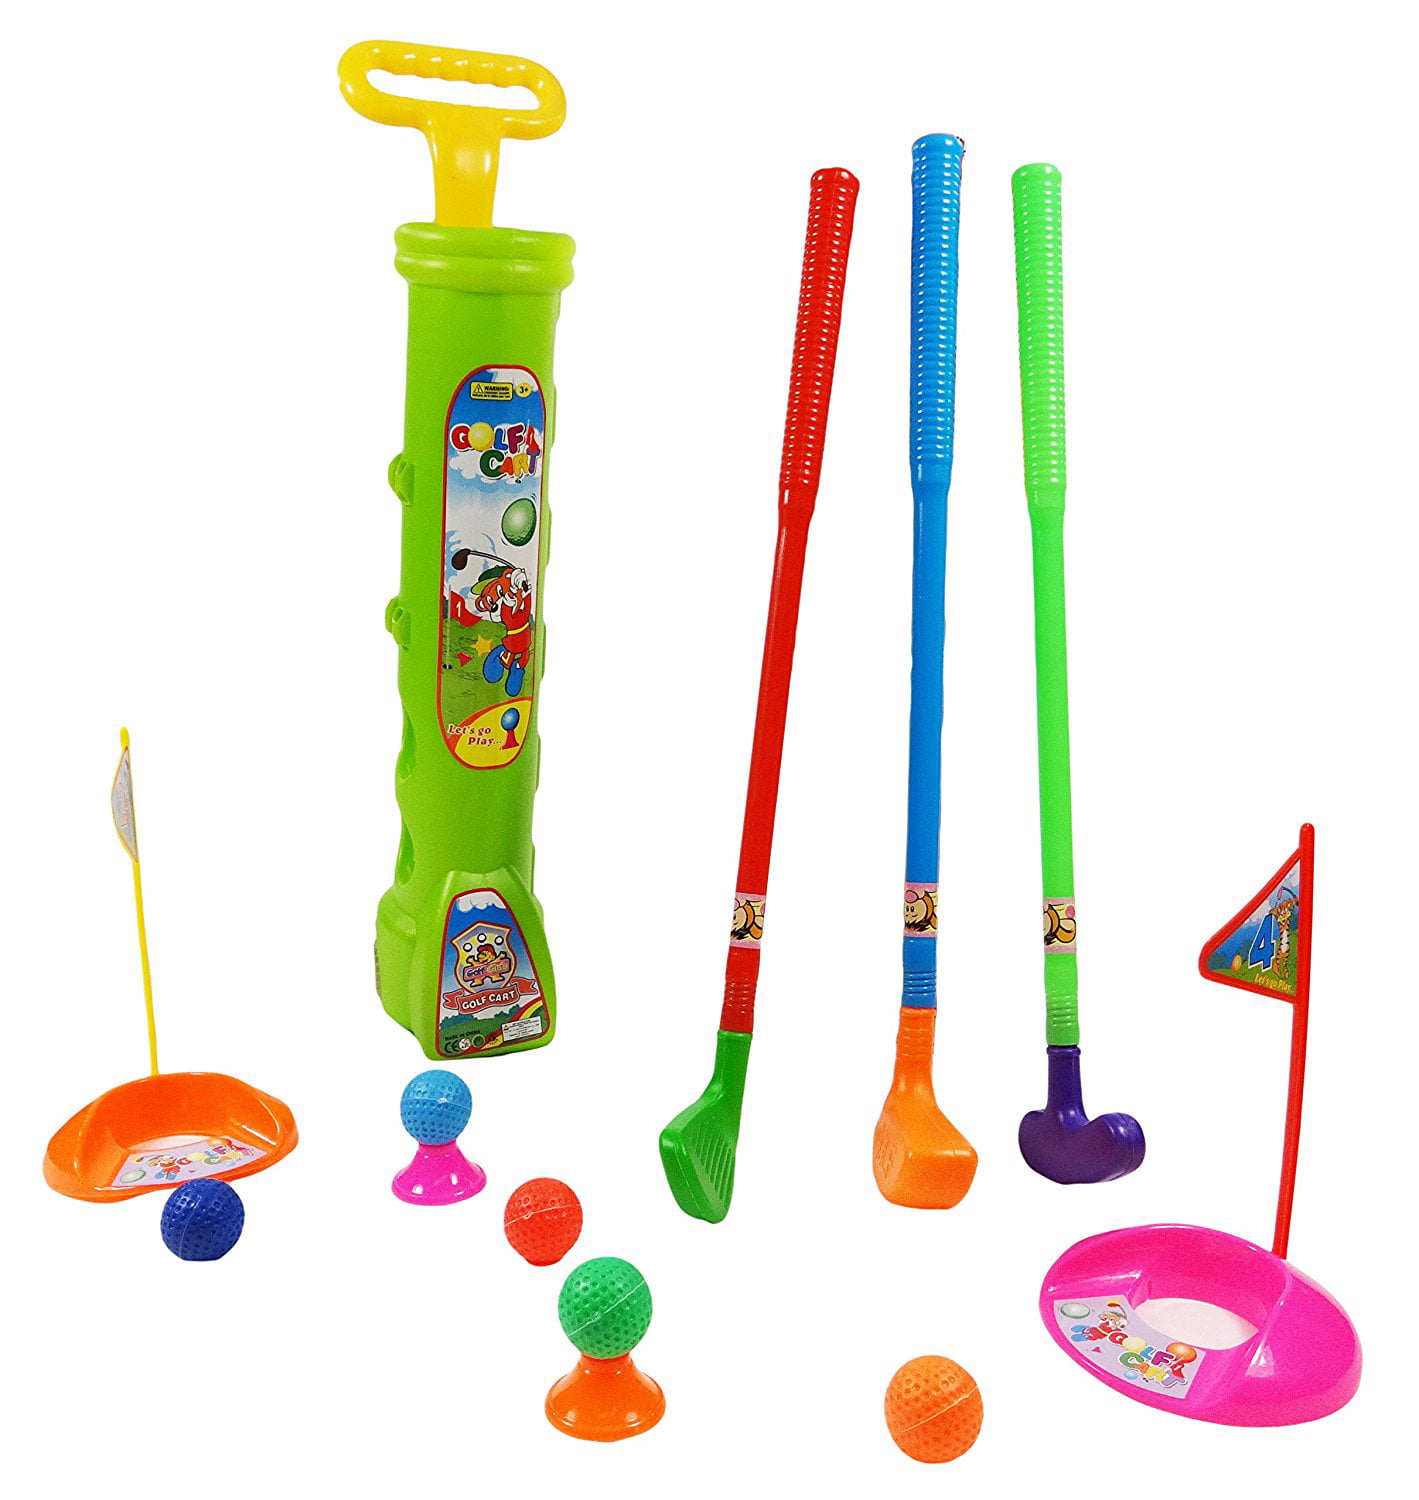 children's toy golf club set